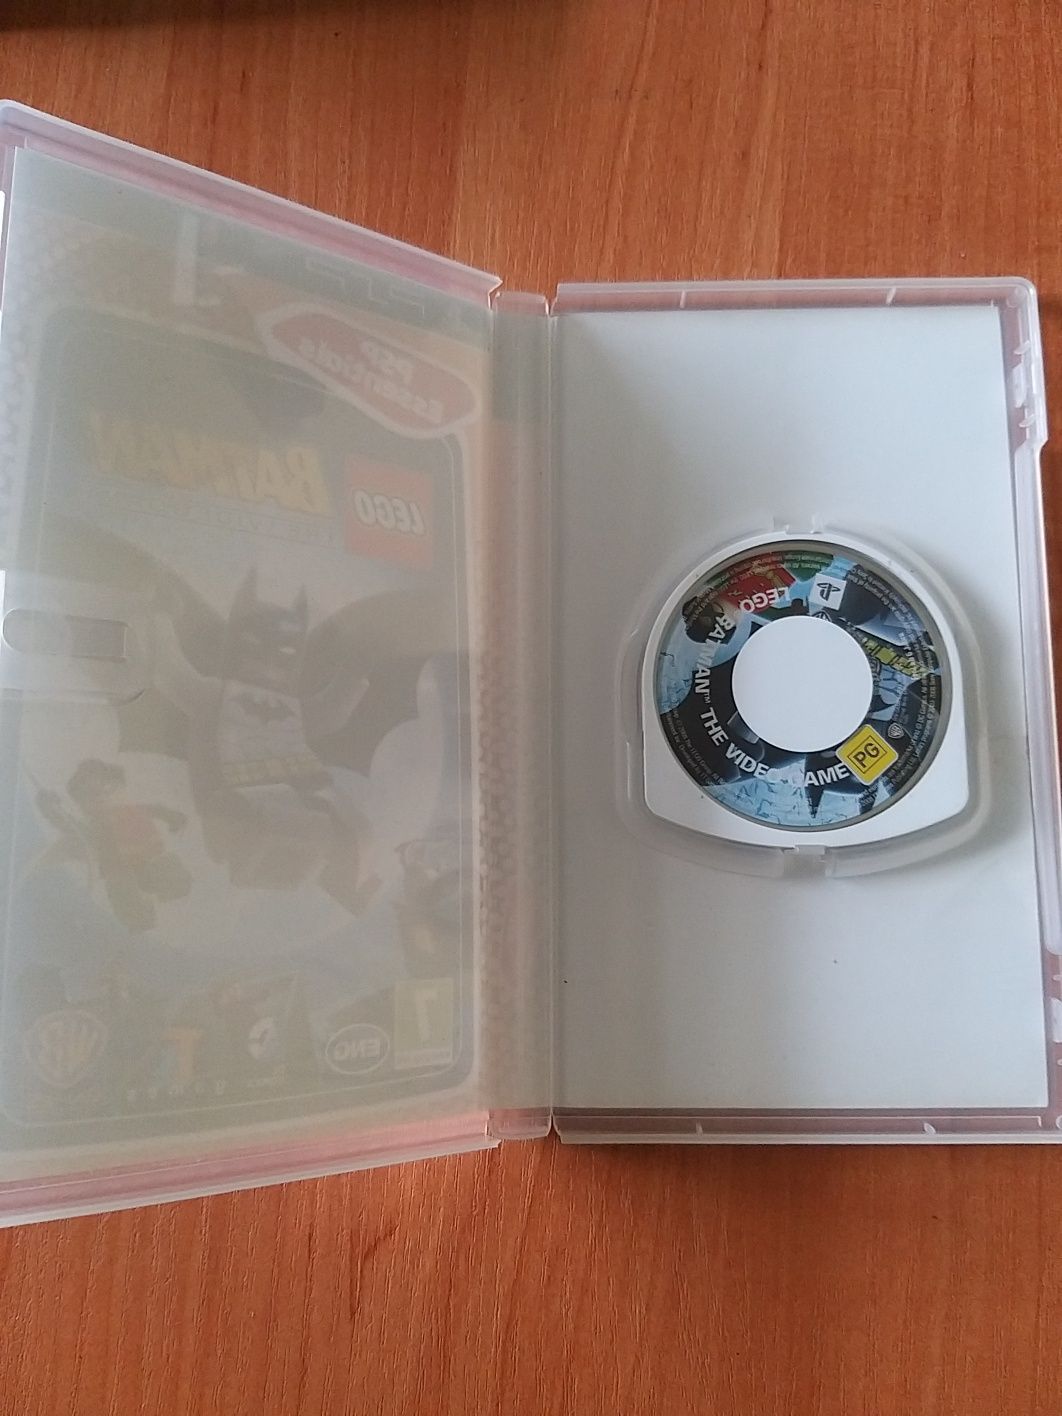 Gra lego Batman na konsolę Sony psp